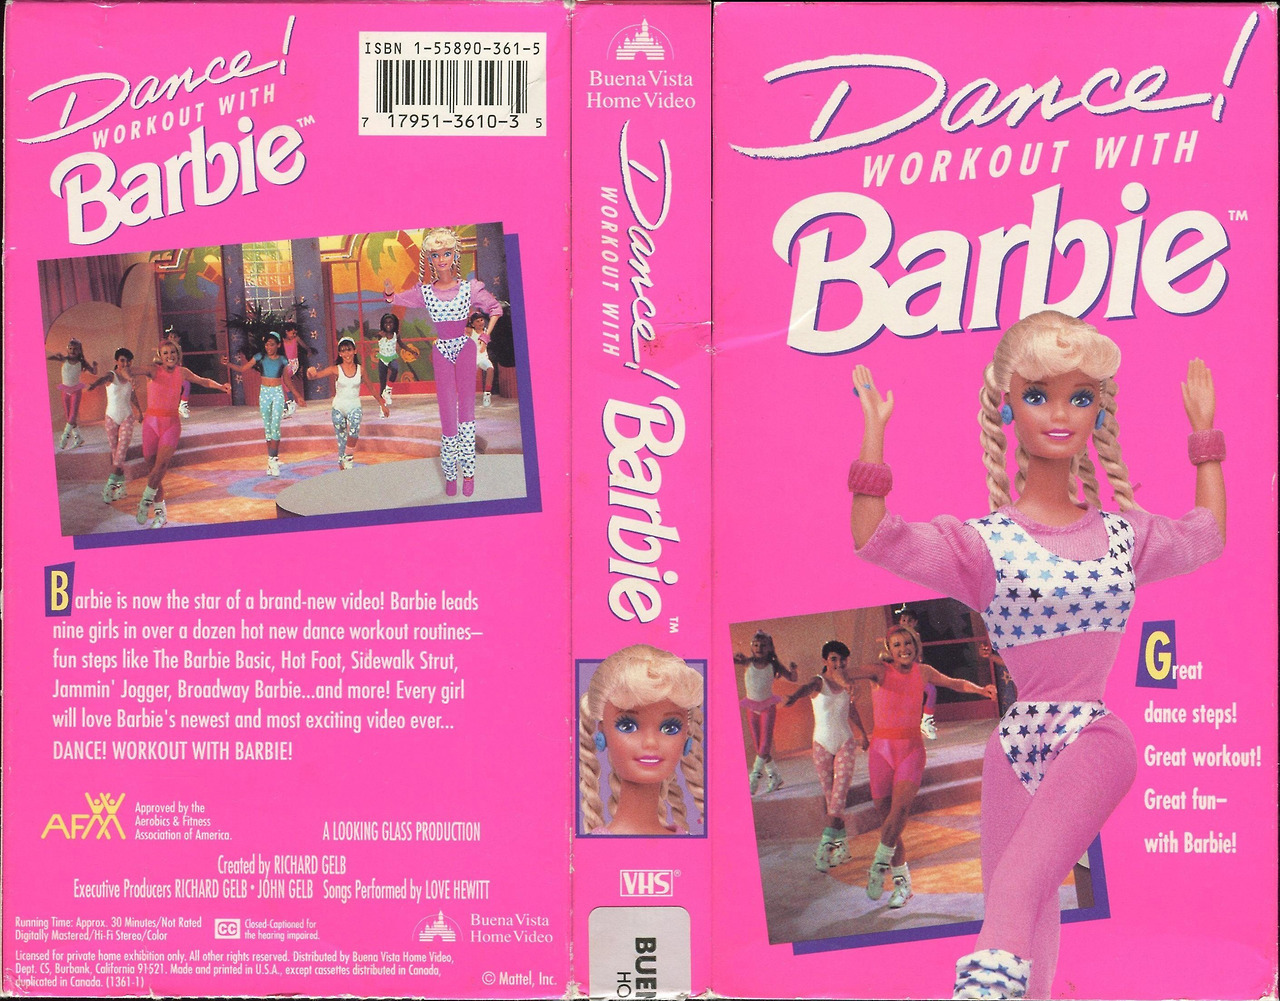 Fitness barbie tumblr